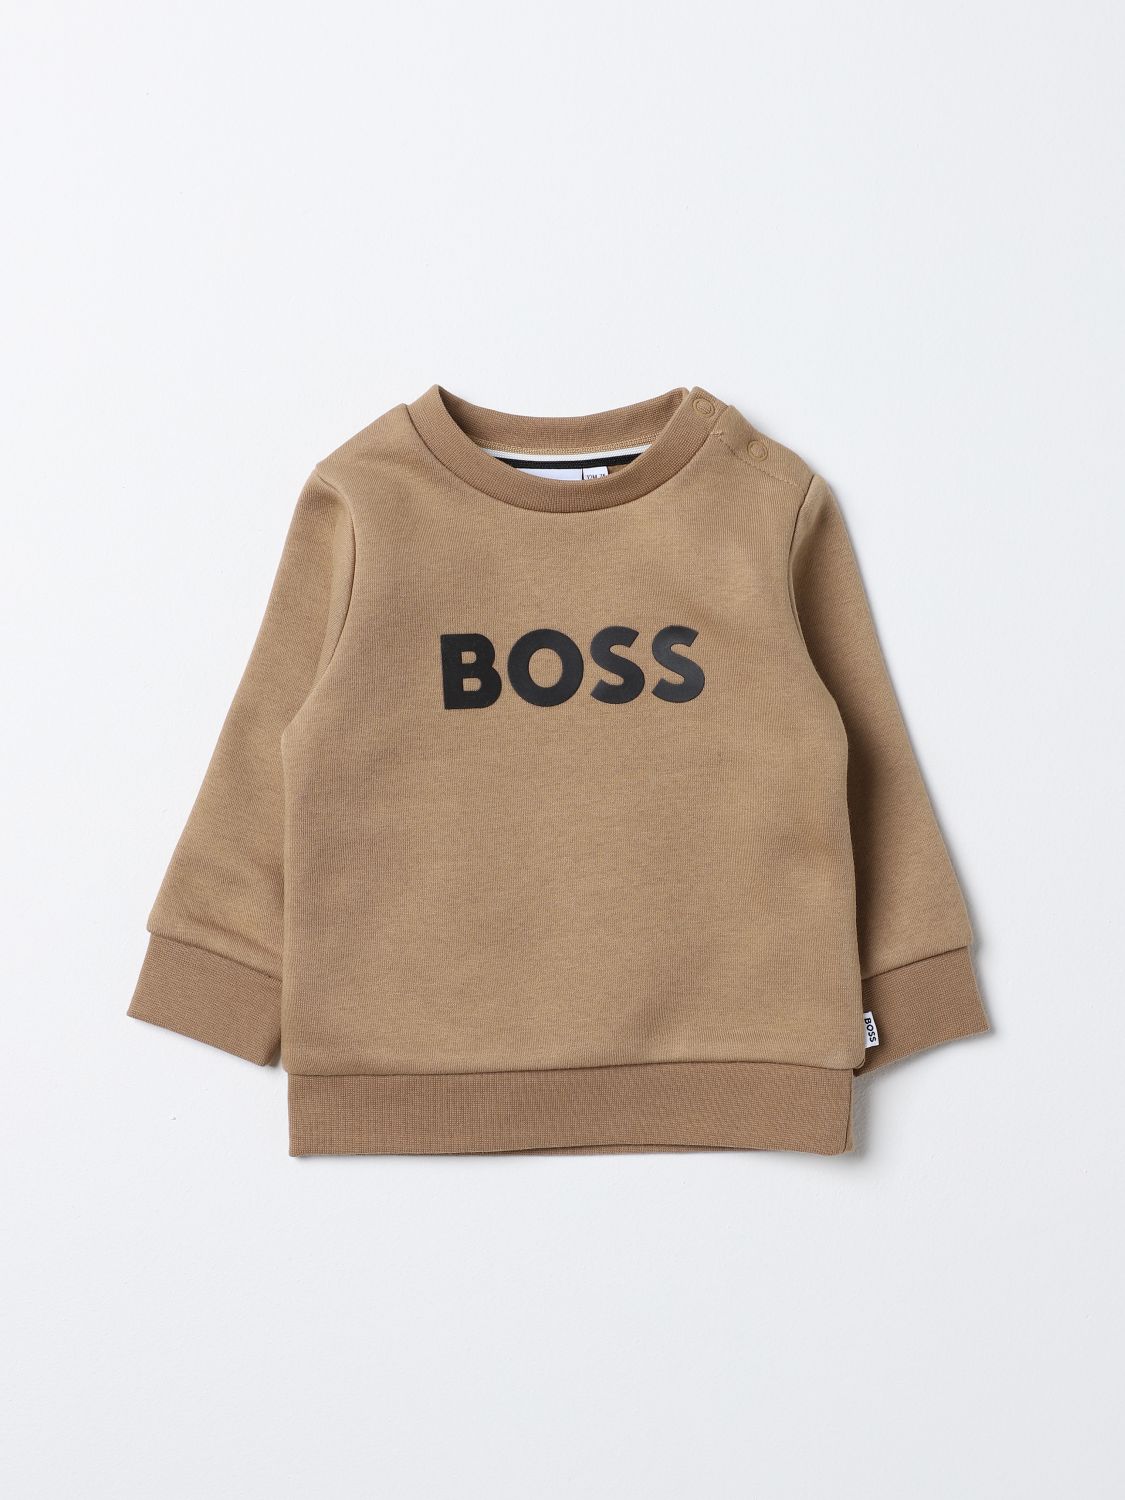 Bosswear Babies' Sweater Boss Kidswear Kids Color Beige